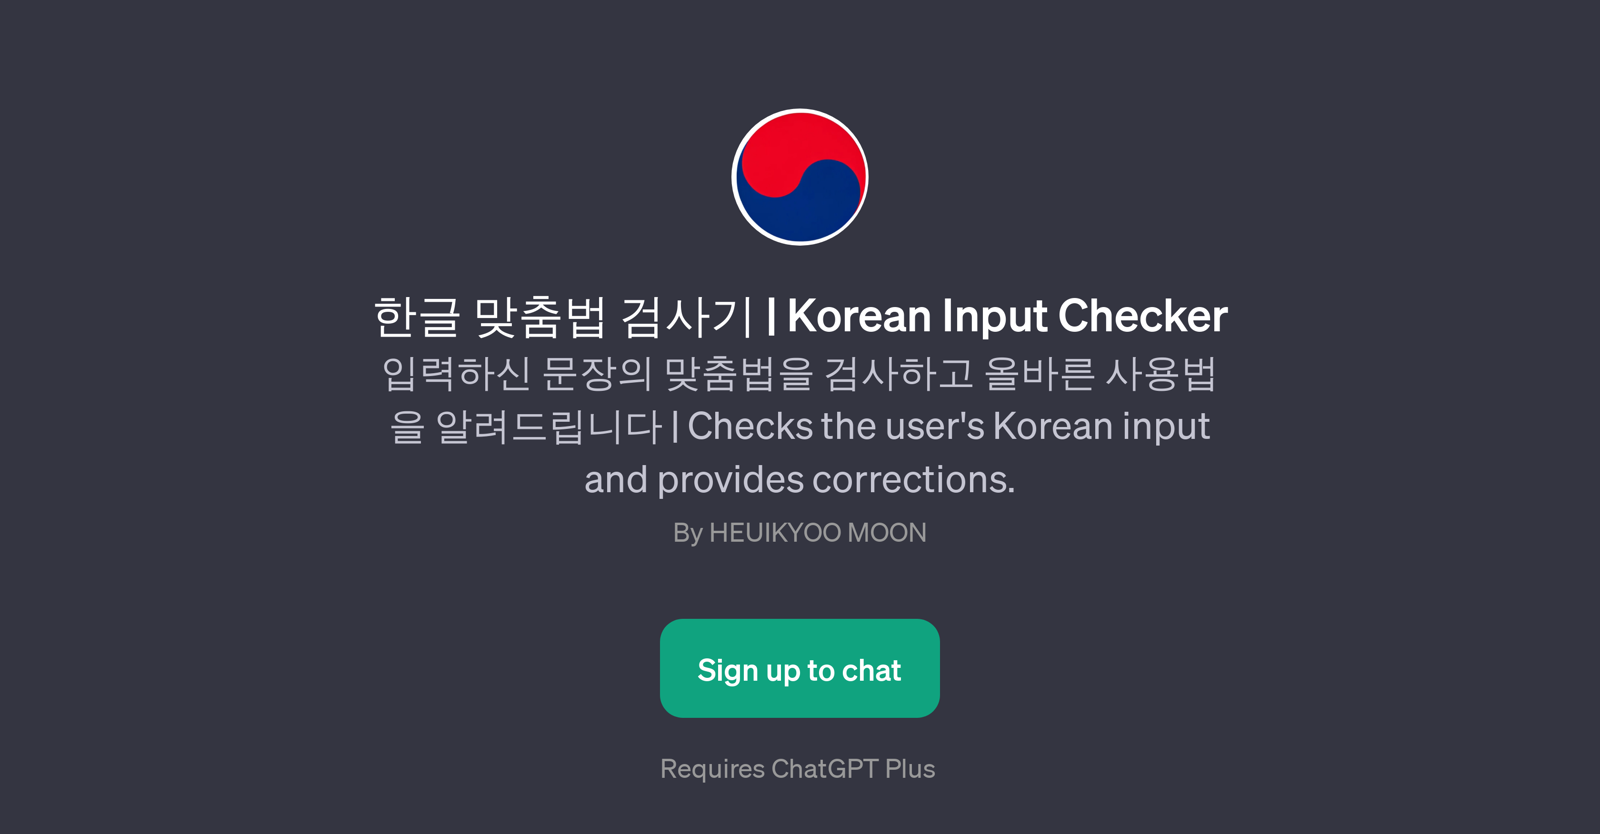 Korean Input Checker website